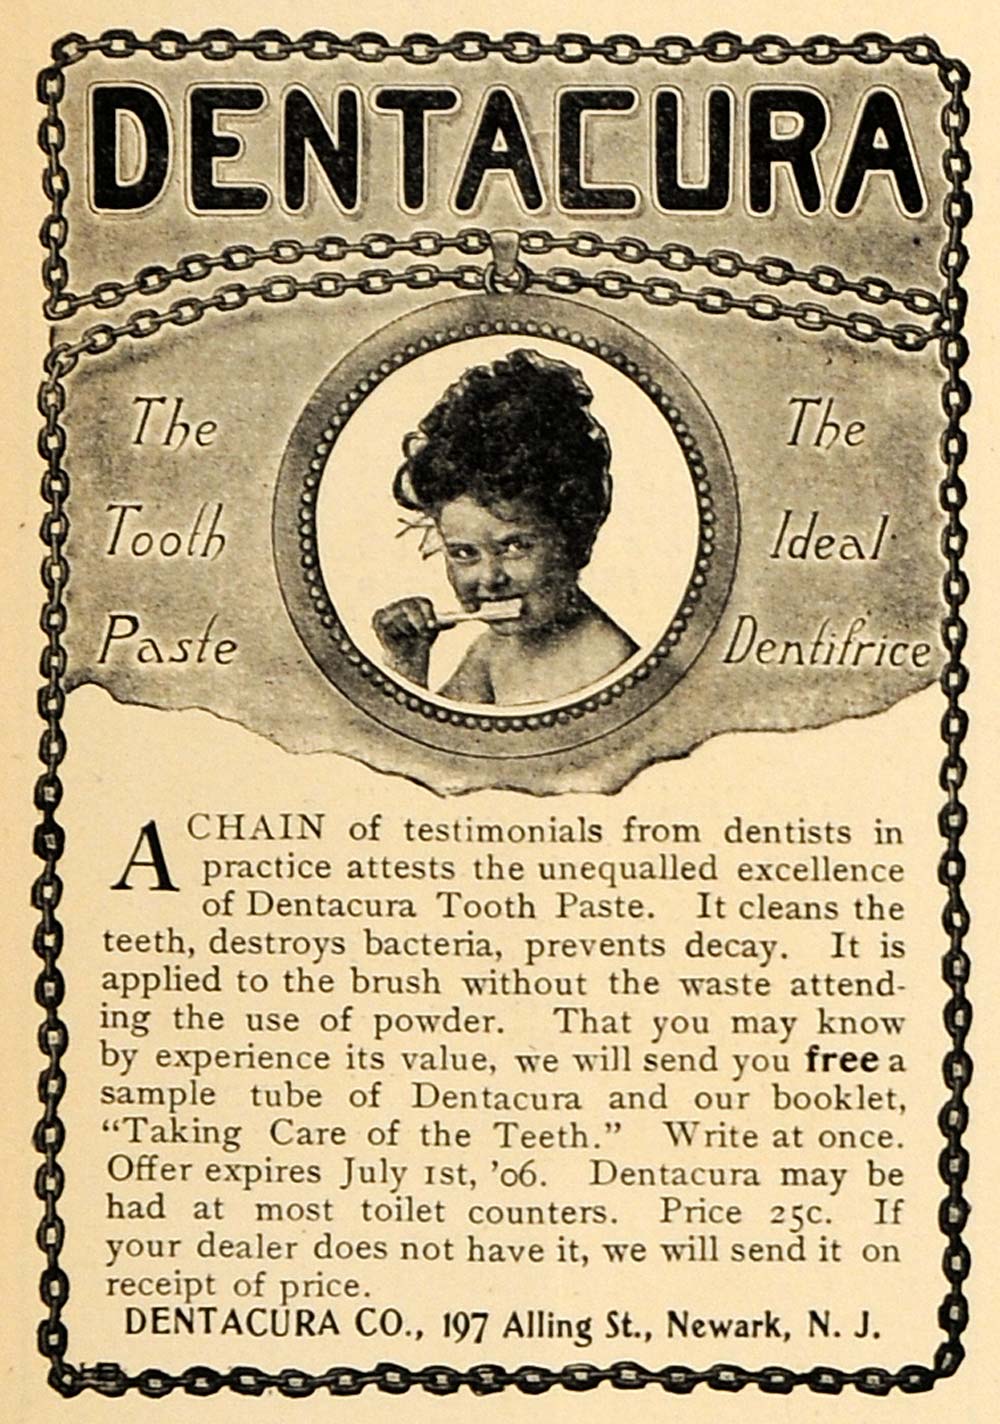 1906 Ad Dentacura Company Toothpaste Dentifrice Teeth - ORIGINAL MUS1